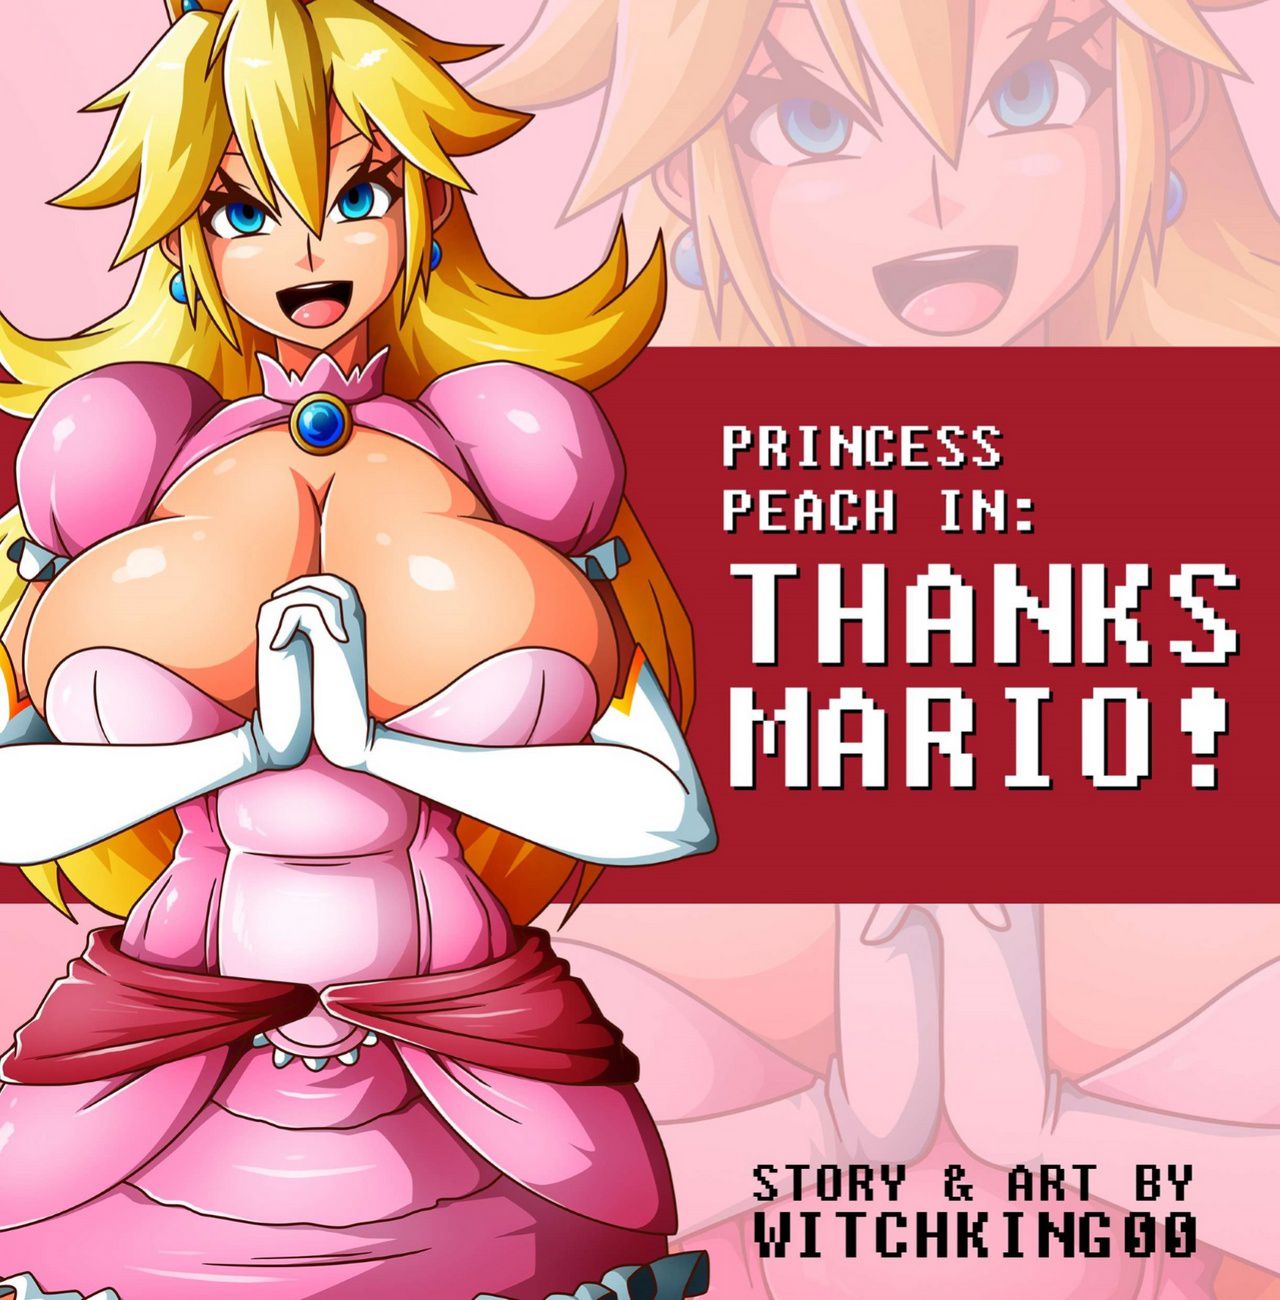 Mario porn comic bowser peach